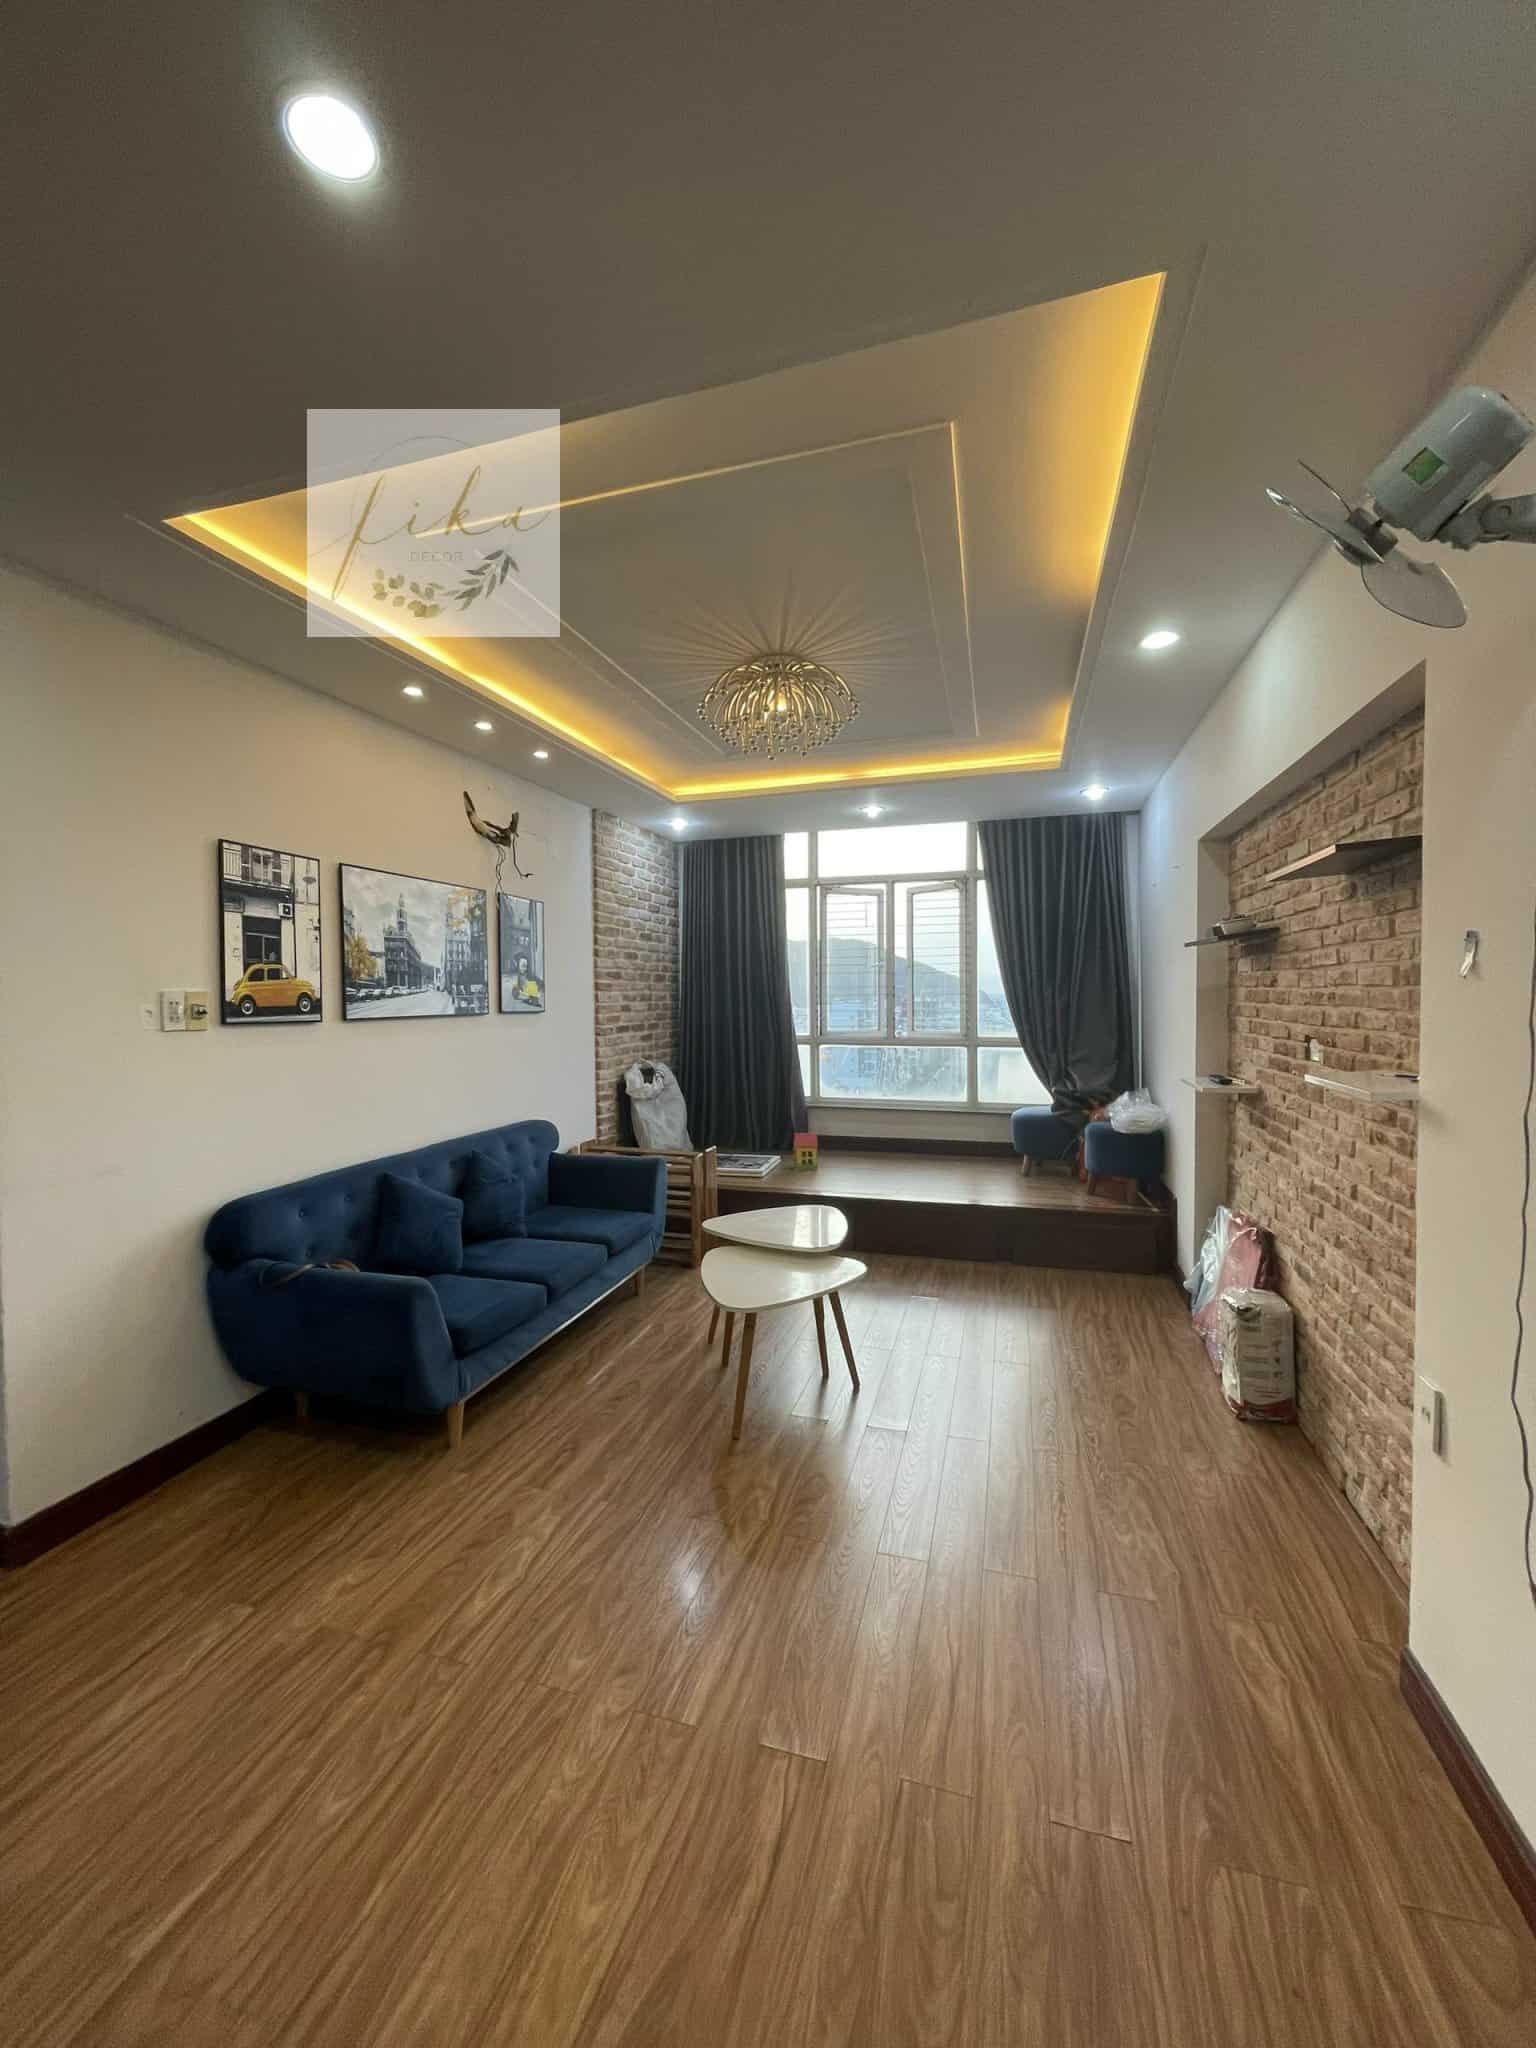 [3/2022] Dự án cải tạo căn hộ cho thuê du lịch tại Quy Nhơn - Before & After 6